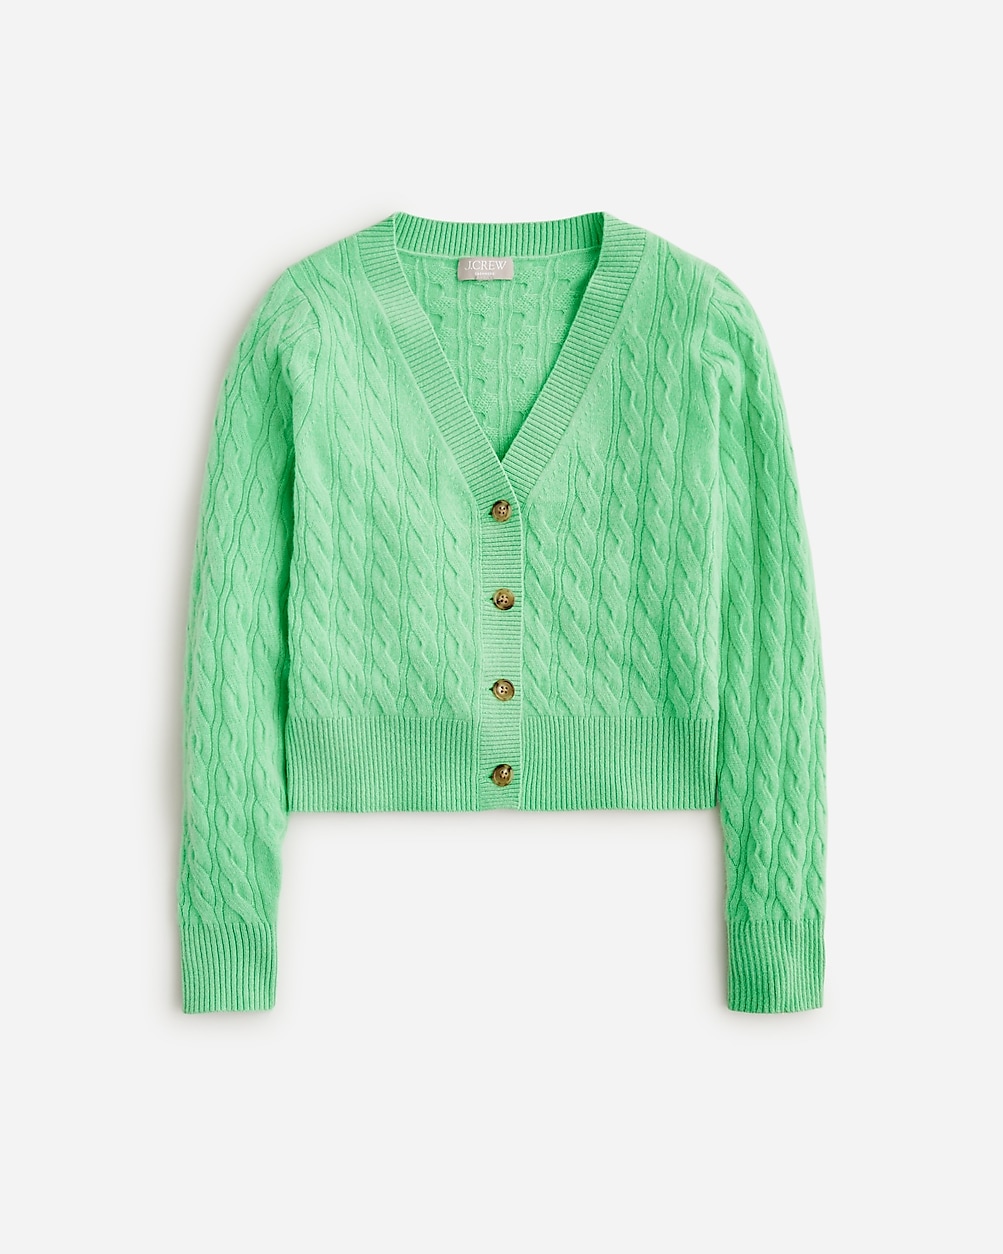 Cashmere shrunken cable-knit V-neck cardigan sweater